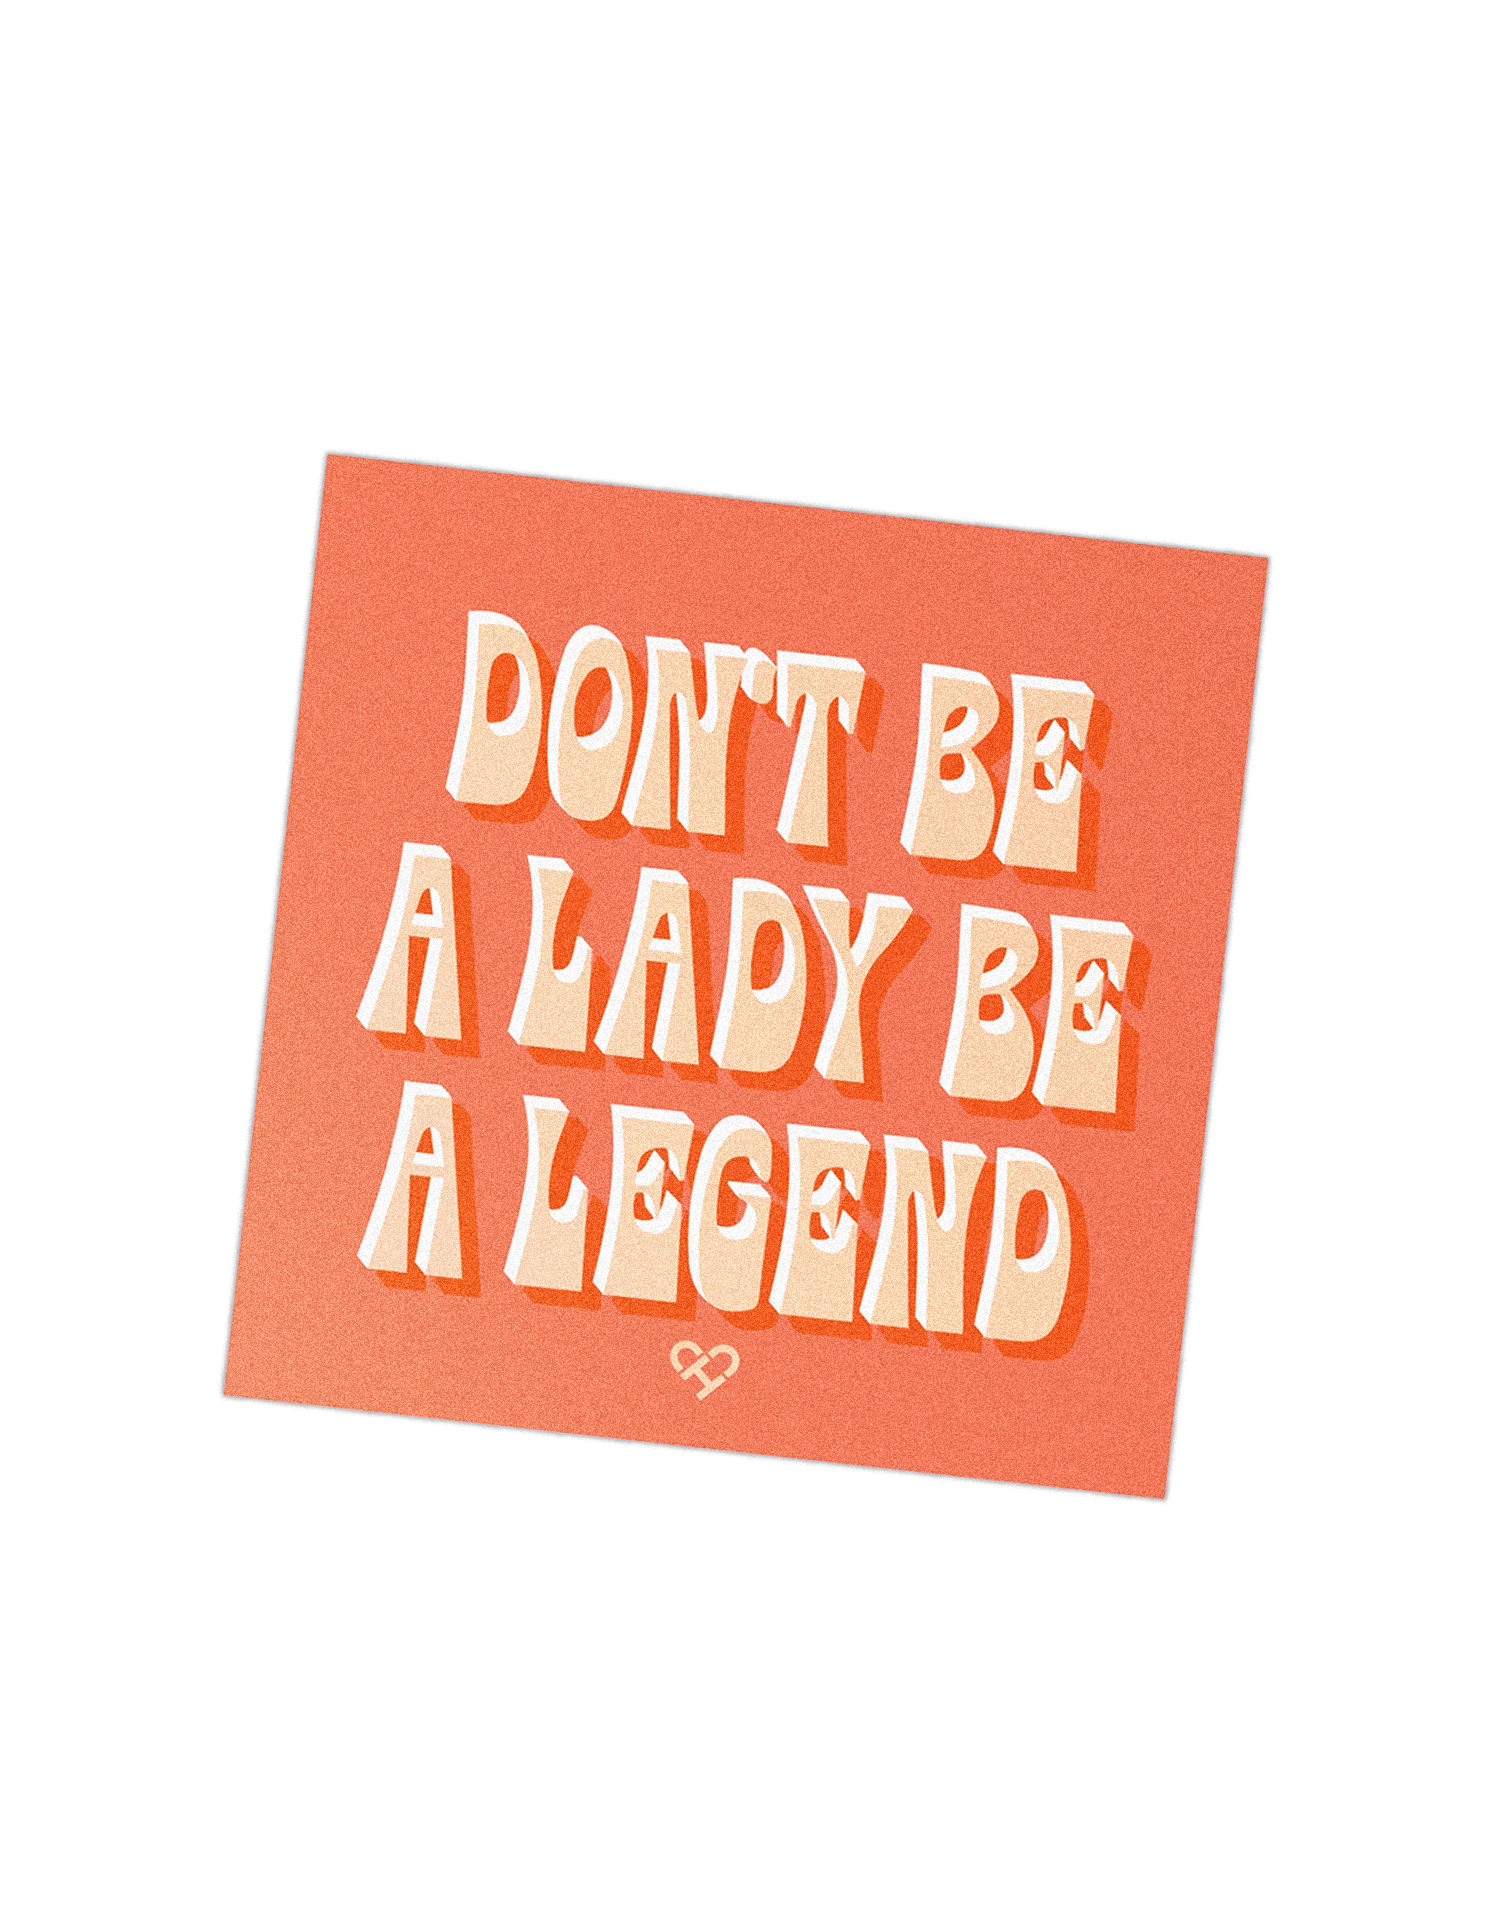 Lady-legend.png